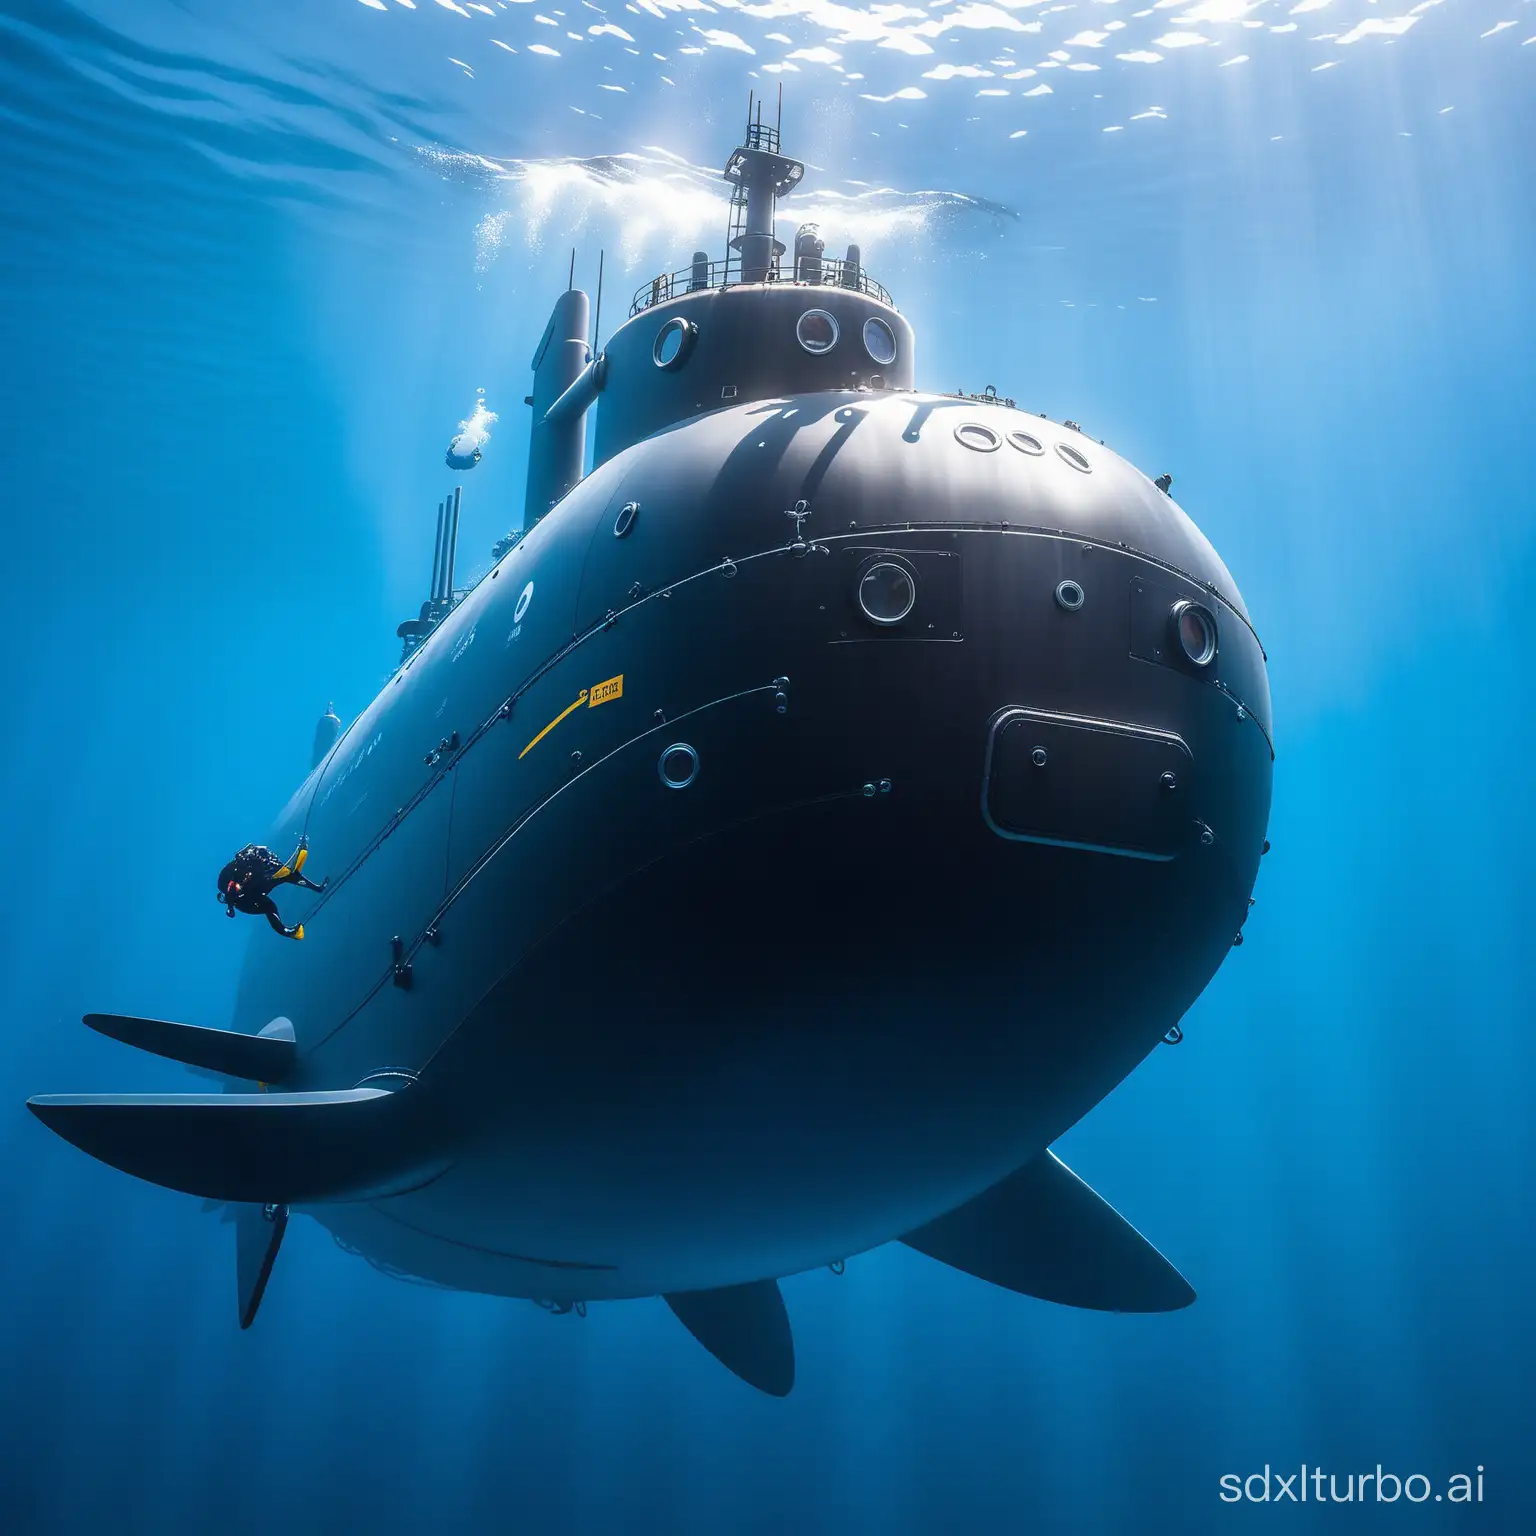 China's Jiaolong Submersible